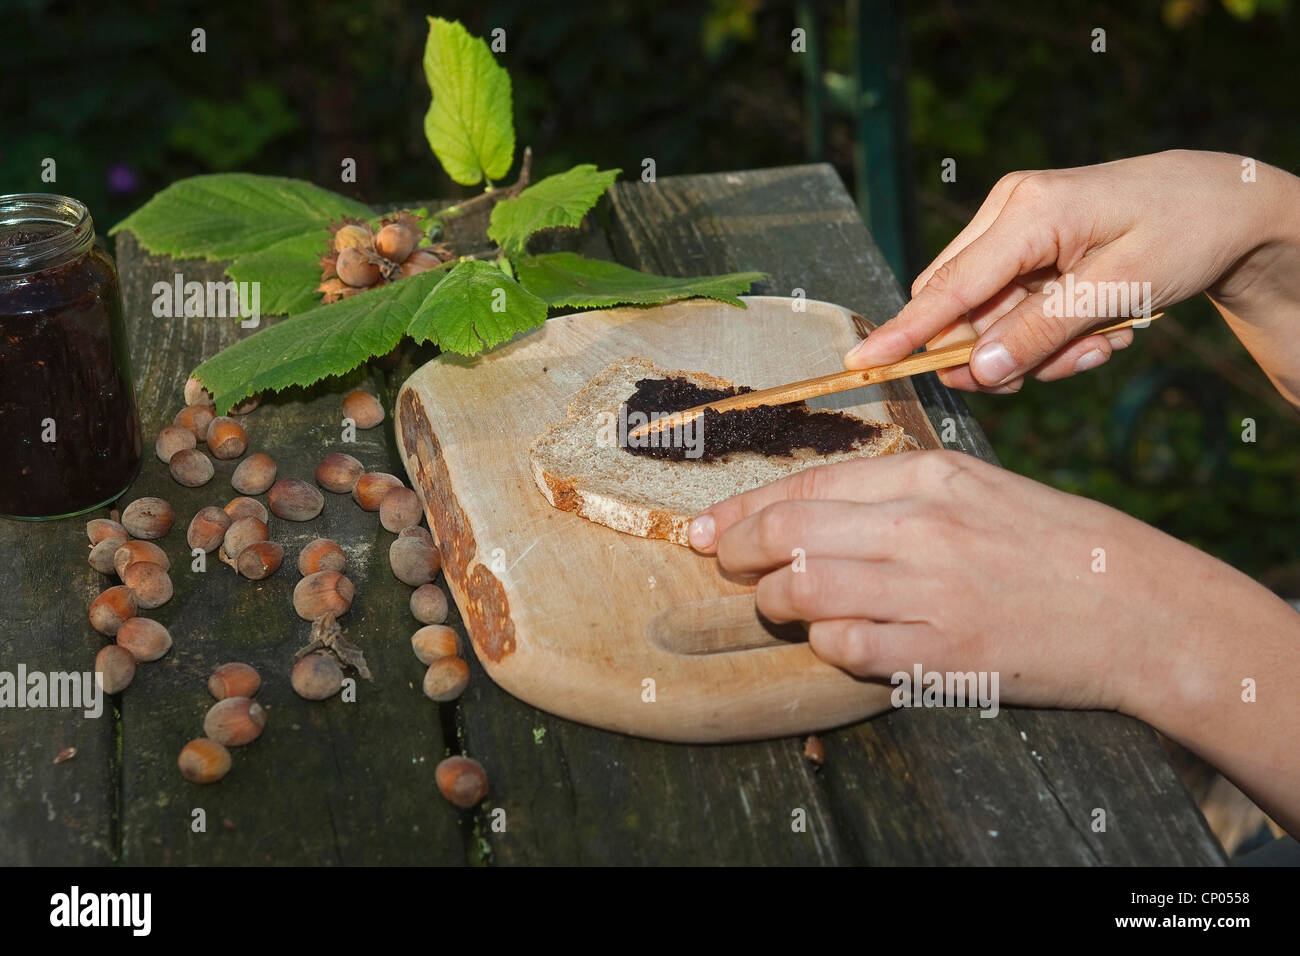 Le noisetier commun (Corylus avellana), enfant assis à la table de jardin Mise à tartiner au chocolat qu'il a faite de l'auto-prélèvement de noisettes, la poudre de cacao, de beurre et de sucre sur une tranche de pain, Allemagne Banque D'Images